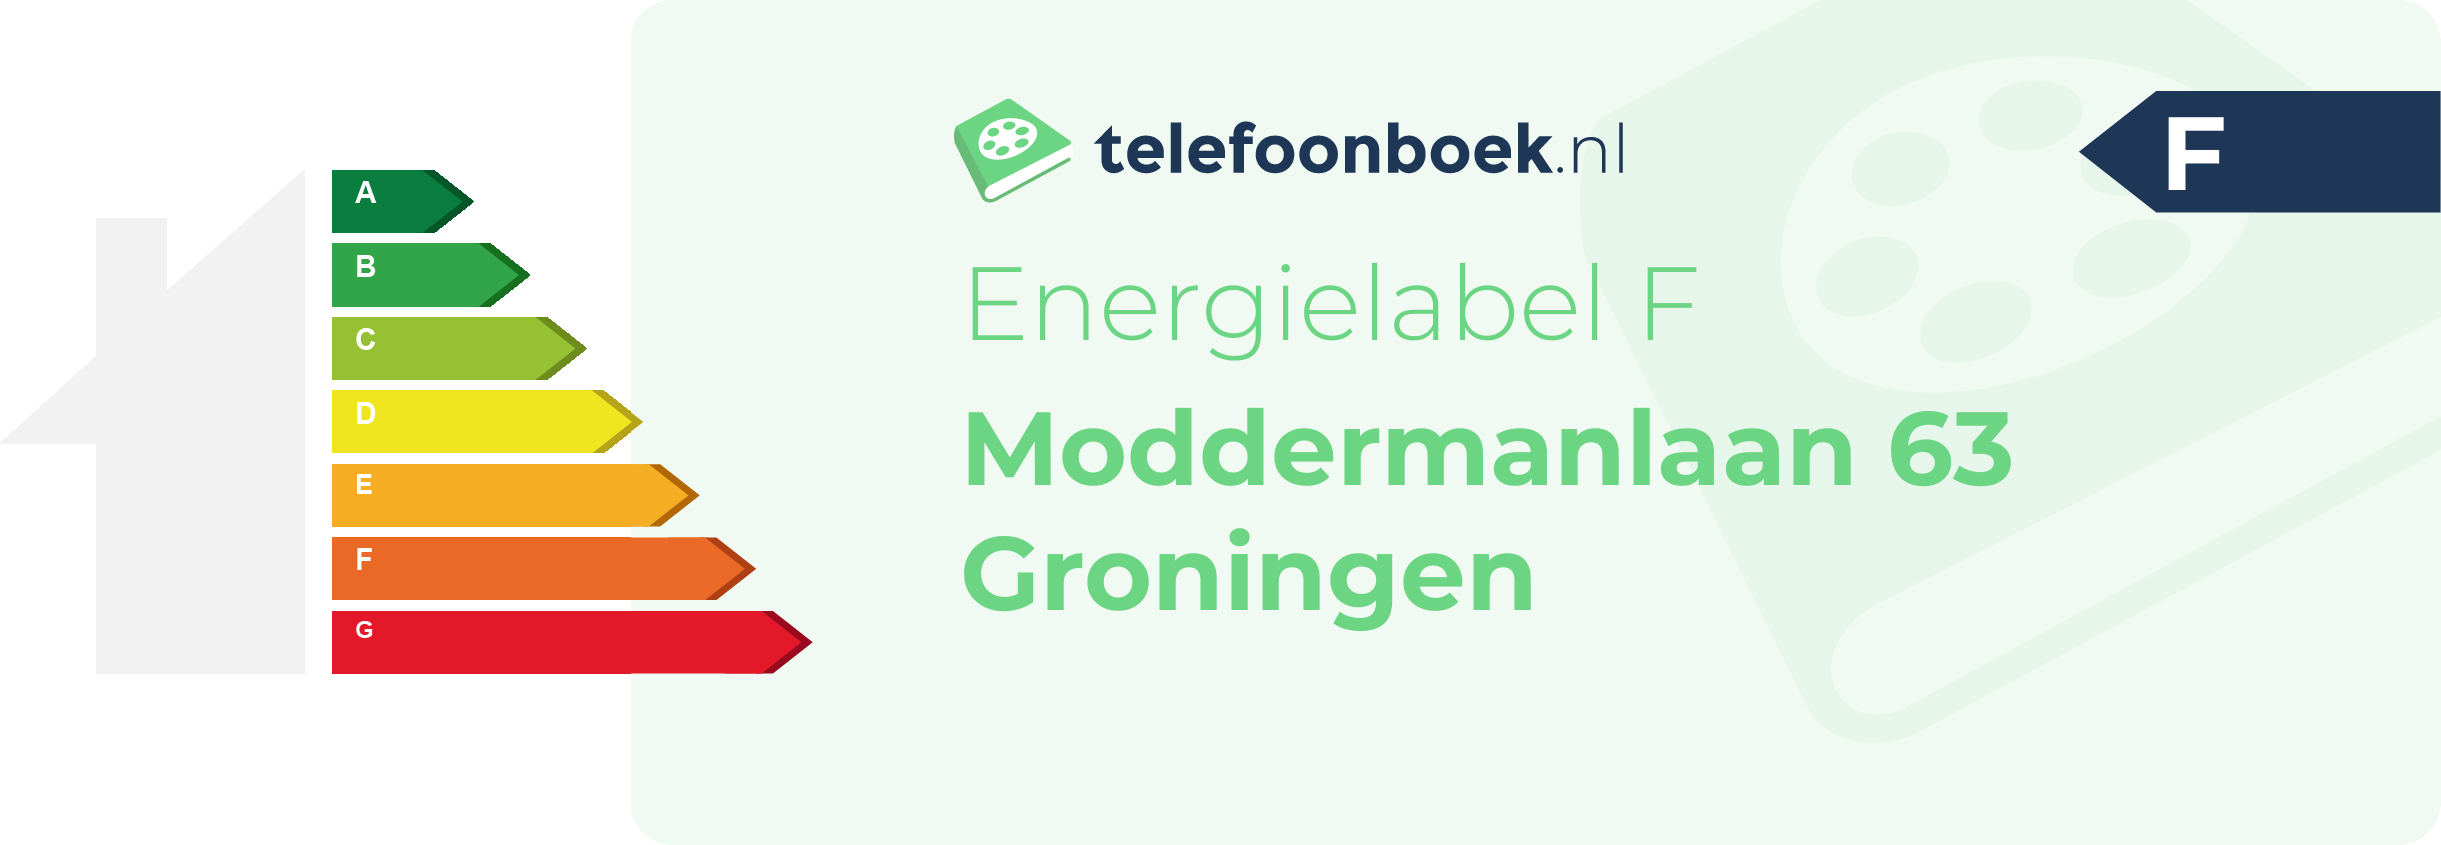 Energielabel Moddermanlaan 63 Groningen